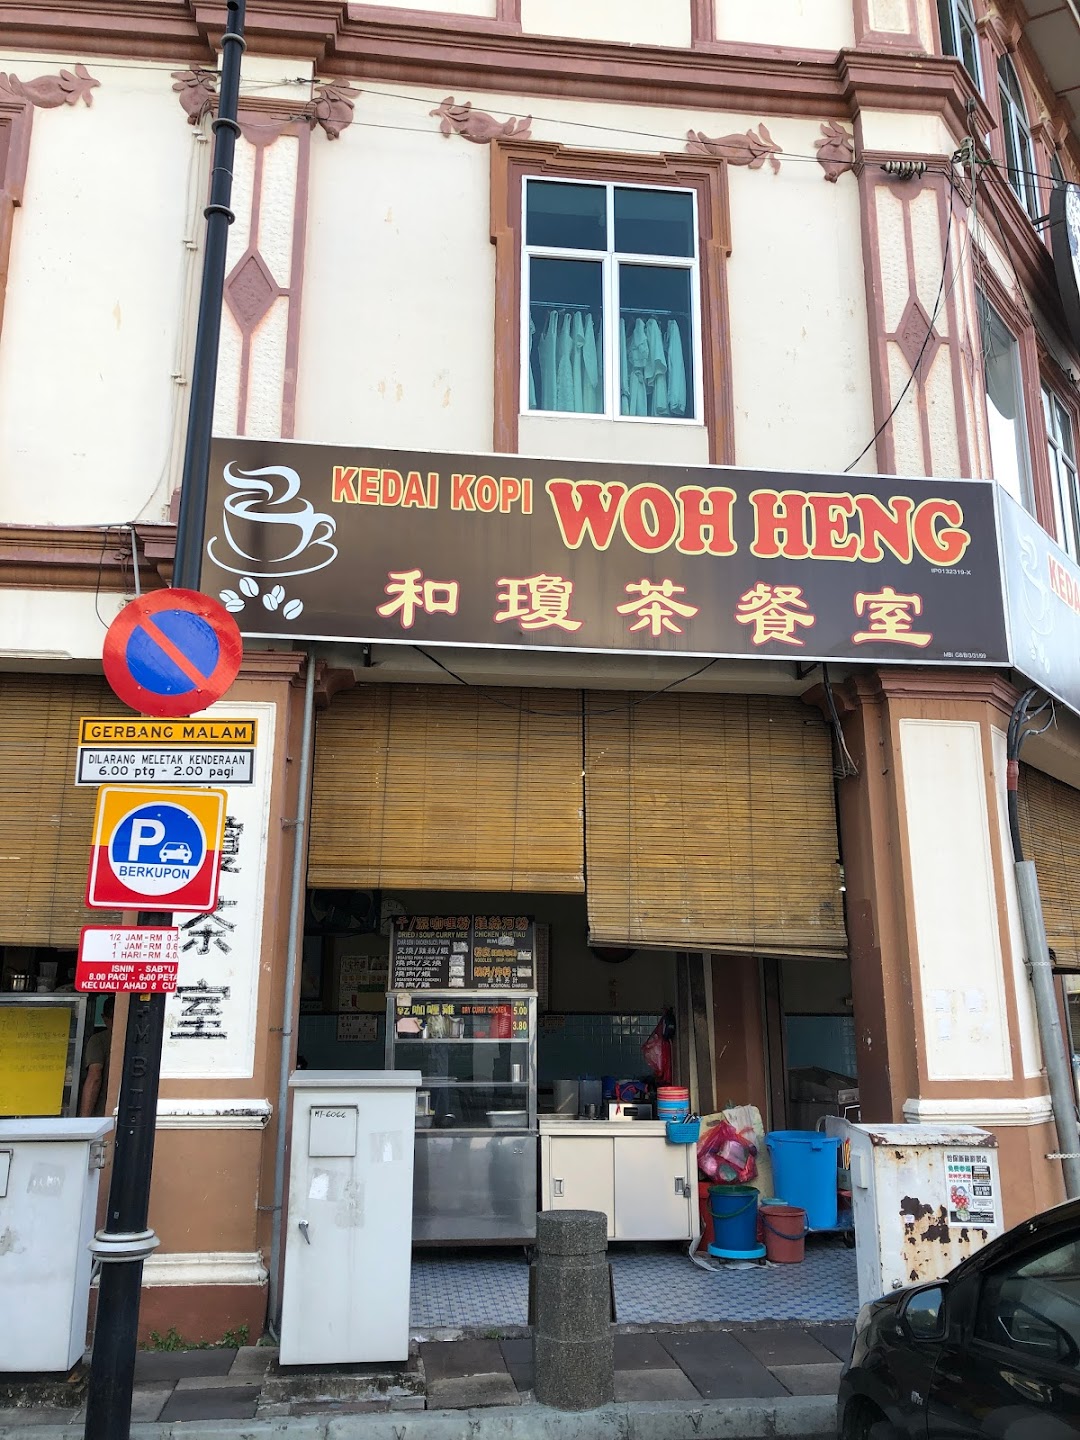 Kedai Kopi Woh Heng